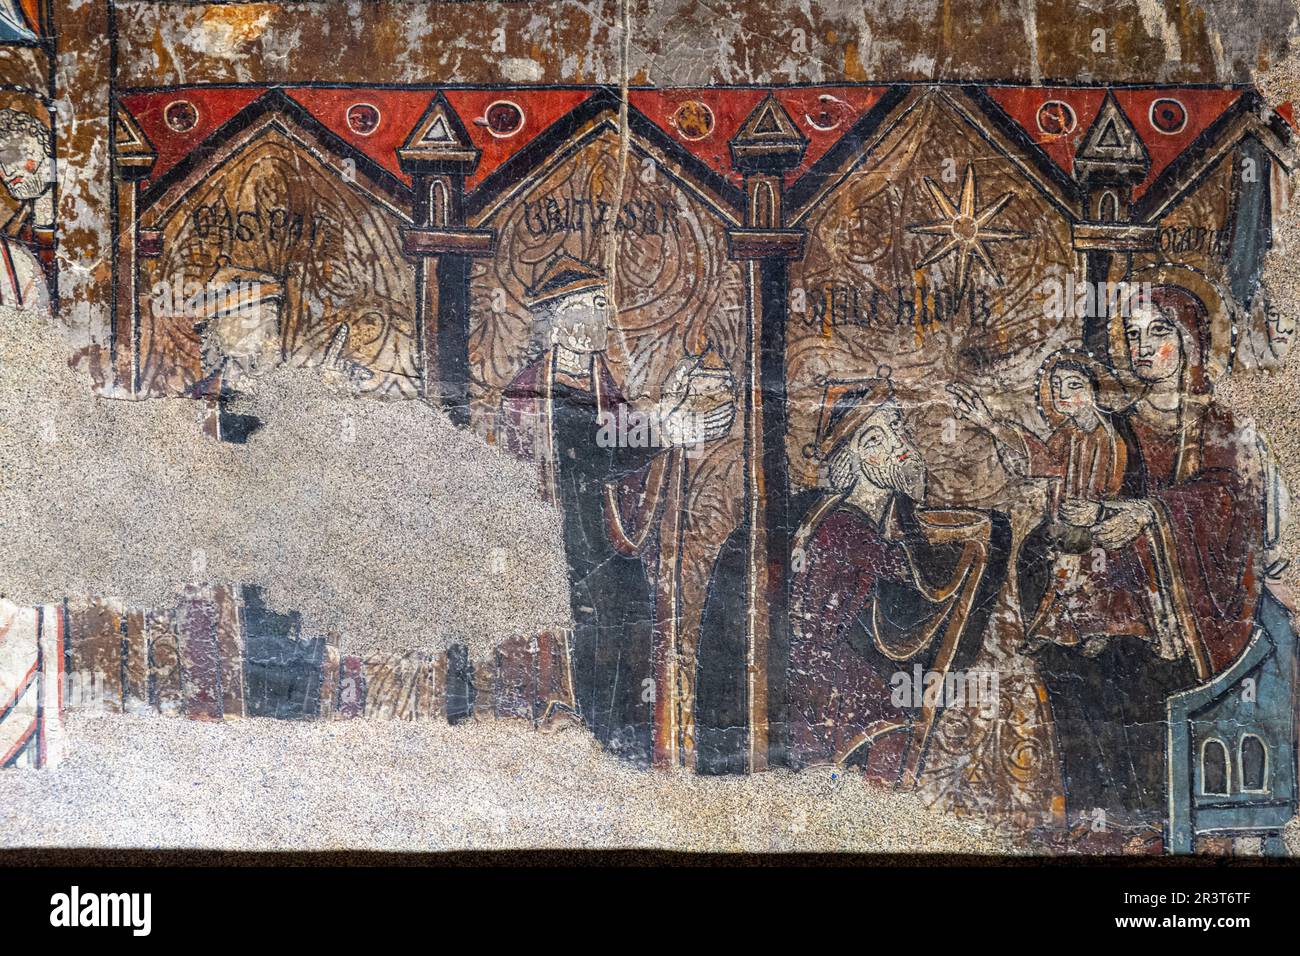 Adoration des trois sages, autel frontal de Santa Maria de Iguacel, XIIIe siècle, peinture de tempera sur bois de pin, Musée diocésain de Jaca, Huesca, Espagne. Banque D'Images